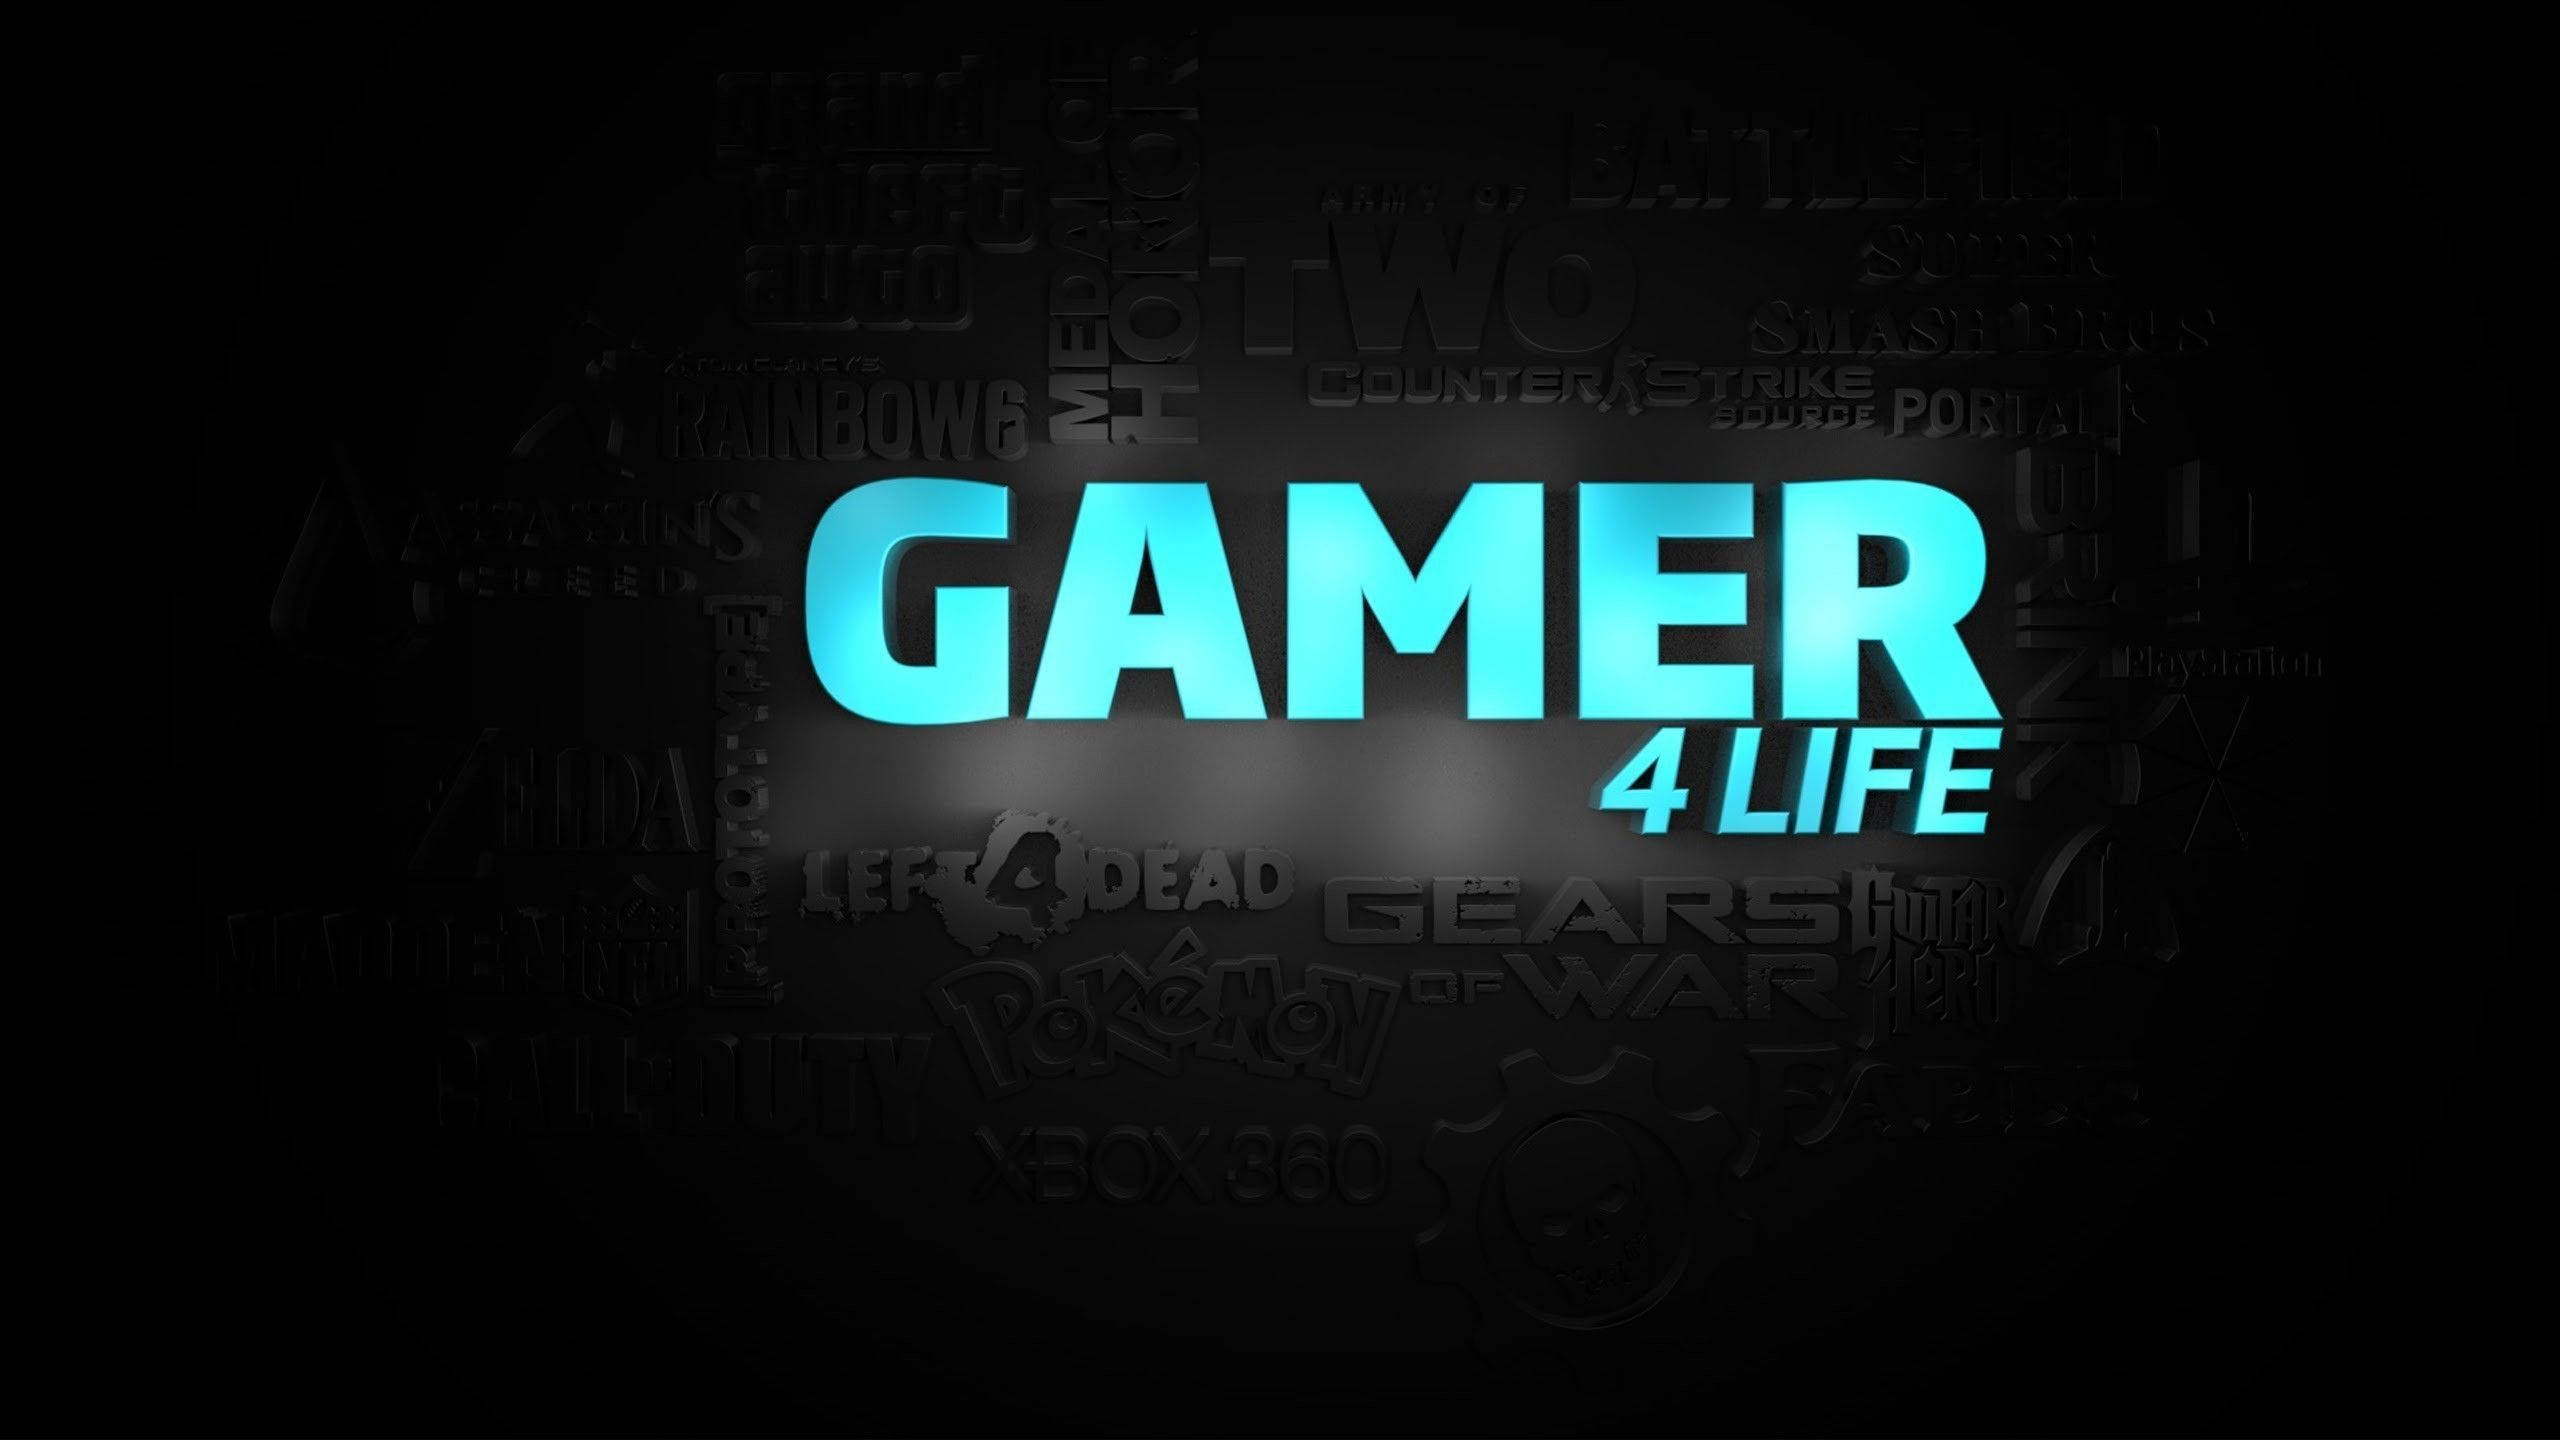 2560x1440 Gaming Gamer 4 Life